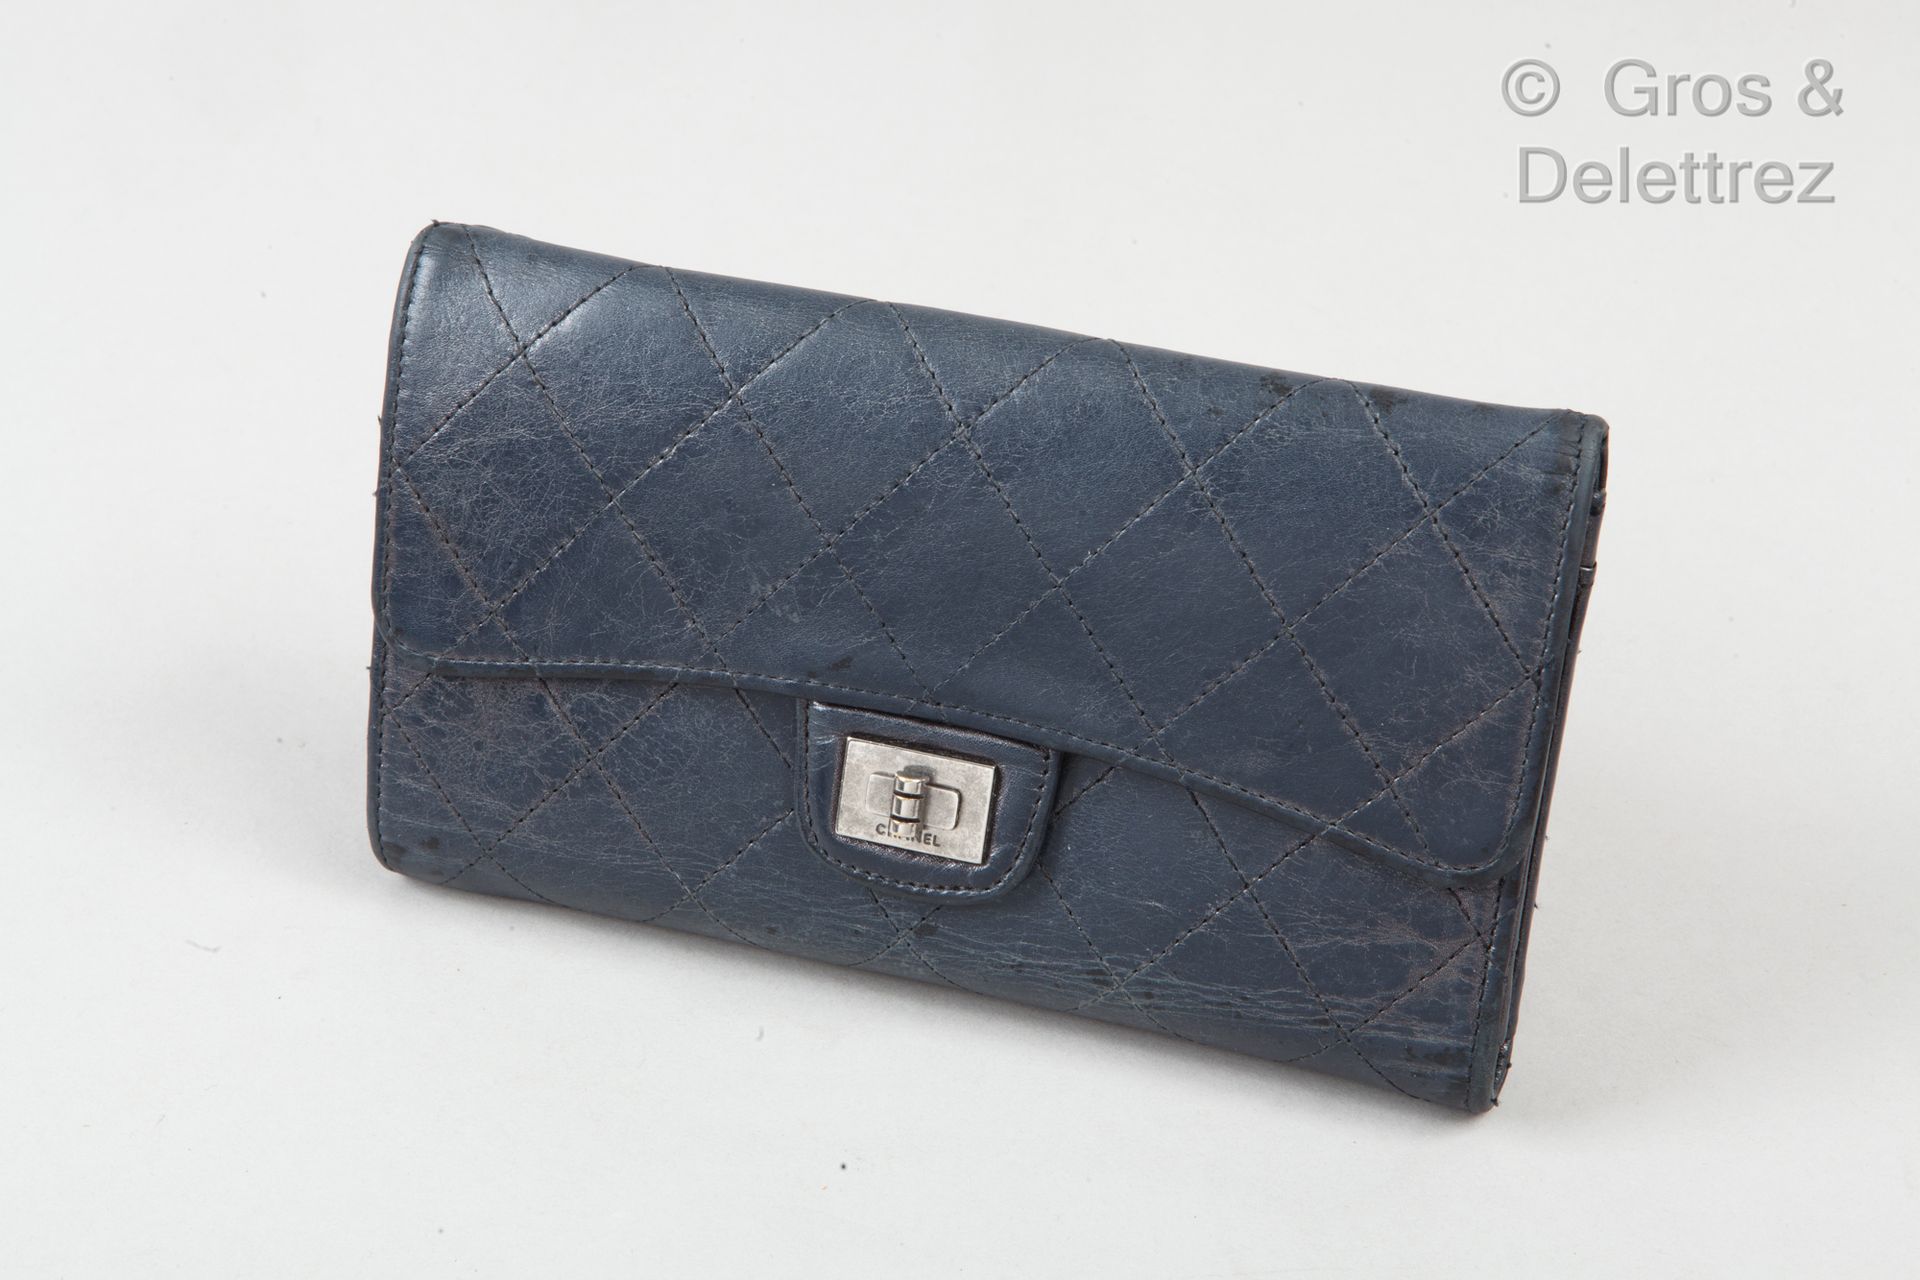 CHANEL Brieftasche aus gealtertem Lammleder, marineblau gesteppt, Druckknopfvers&hellip;